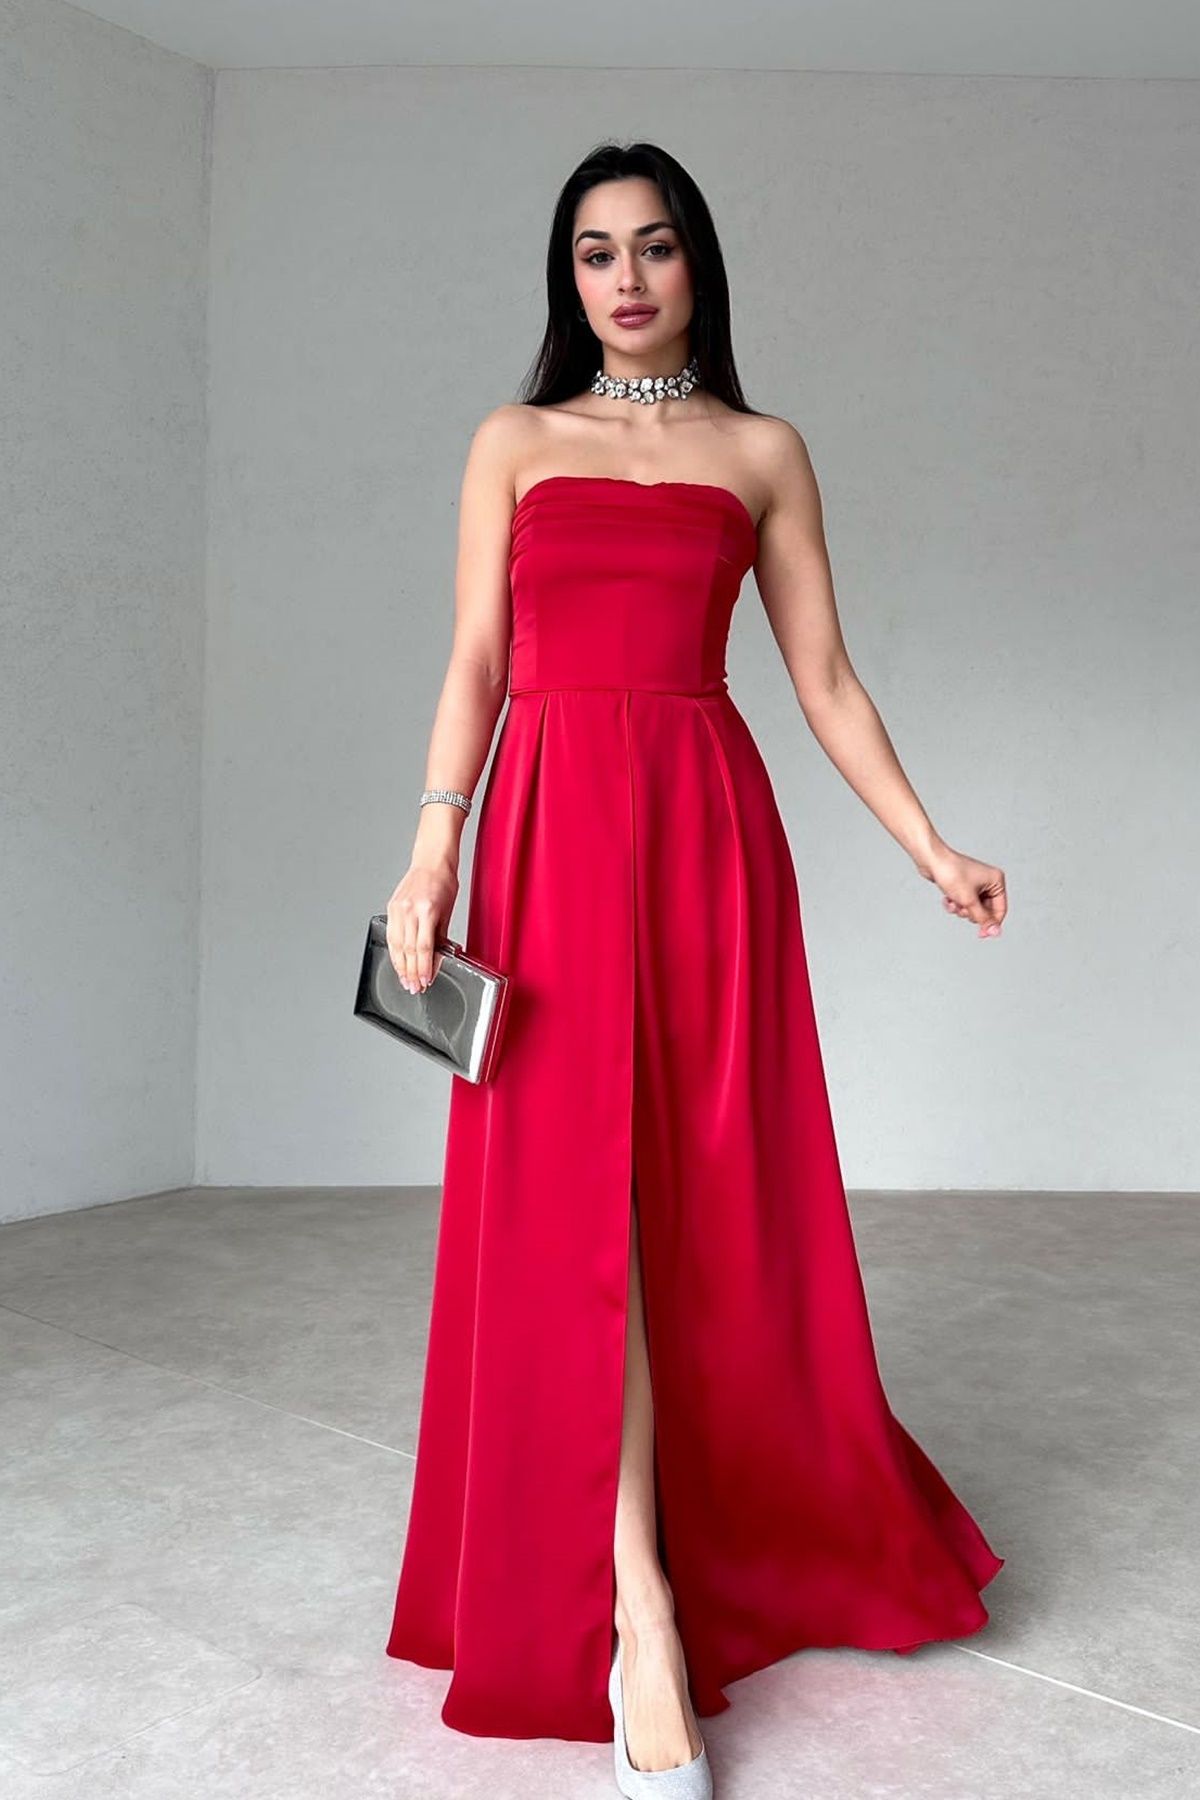 lovebox Kadın Saten Kumaş Çift Etek Formlu Straplez Yaka Yırtmaç Detaylı Kırmızı Maxi Abiye Elbise 161